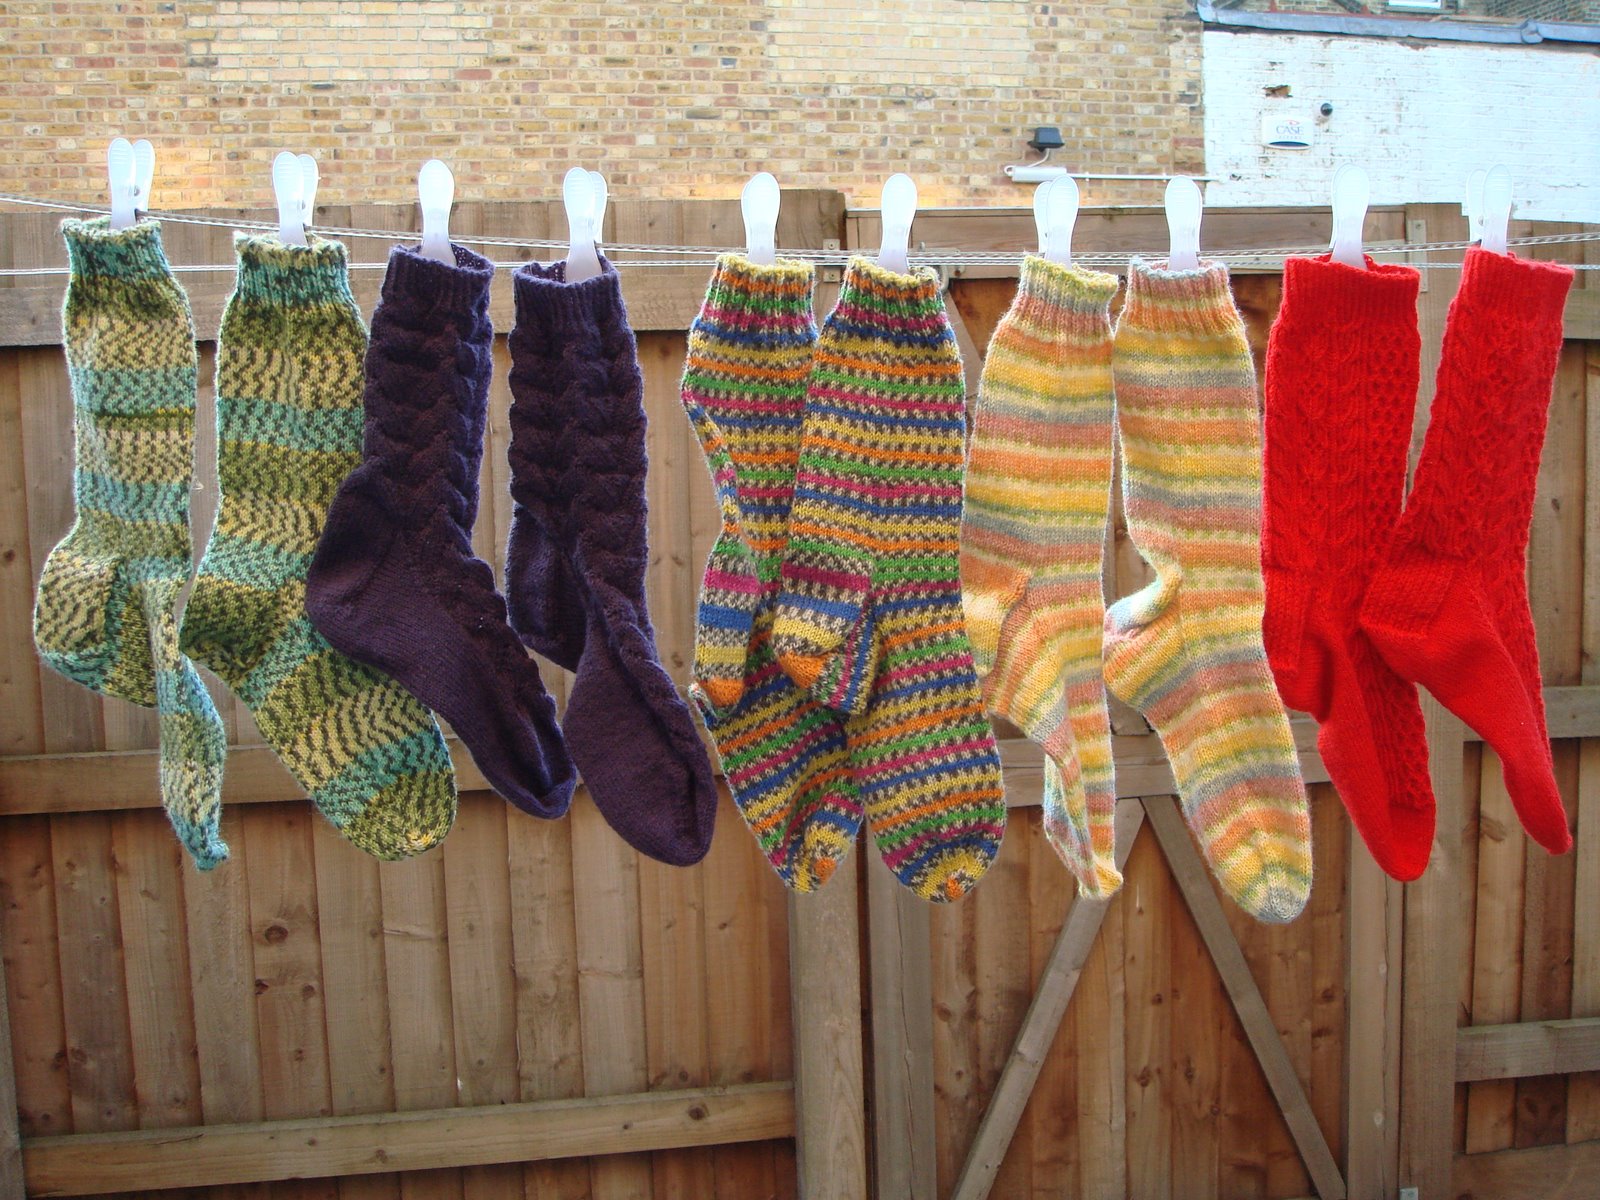 Socks, socks and more socks